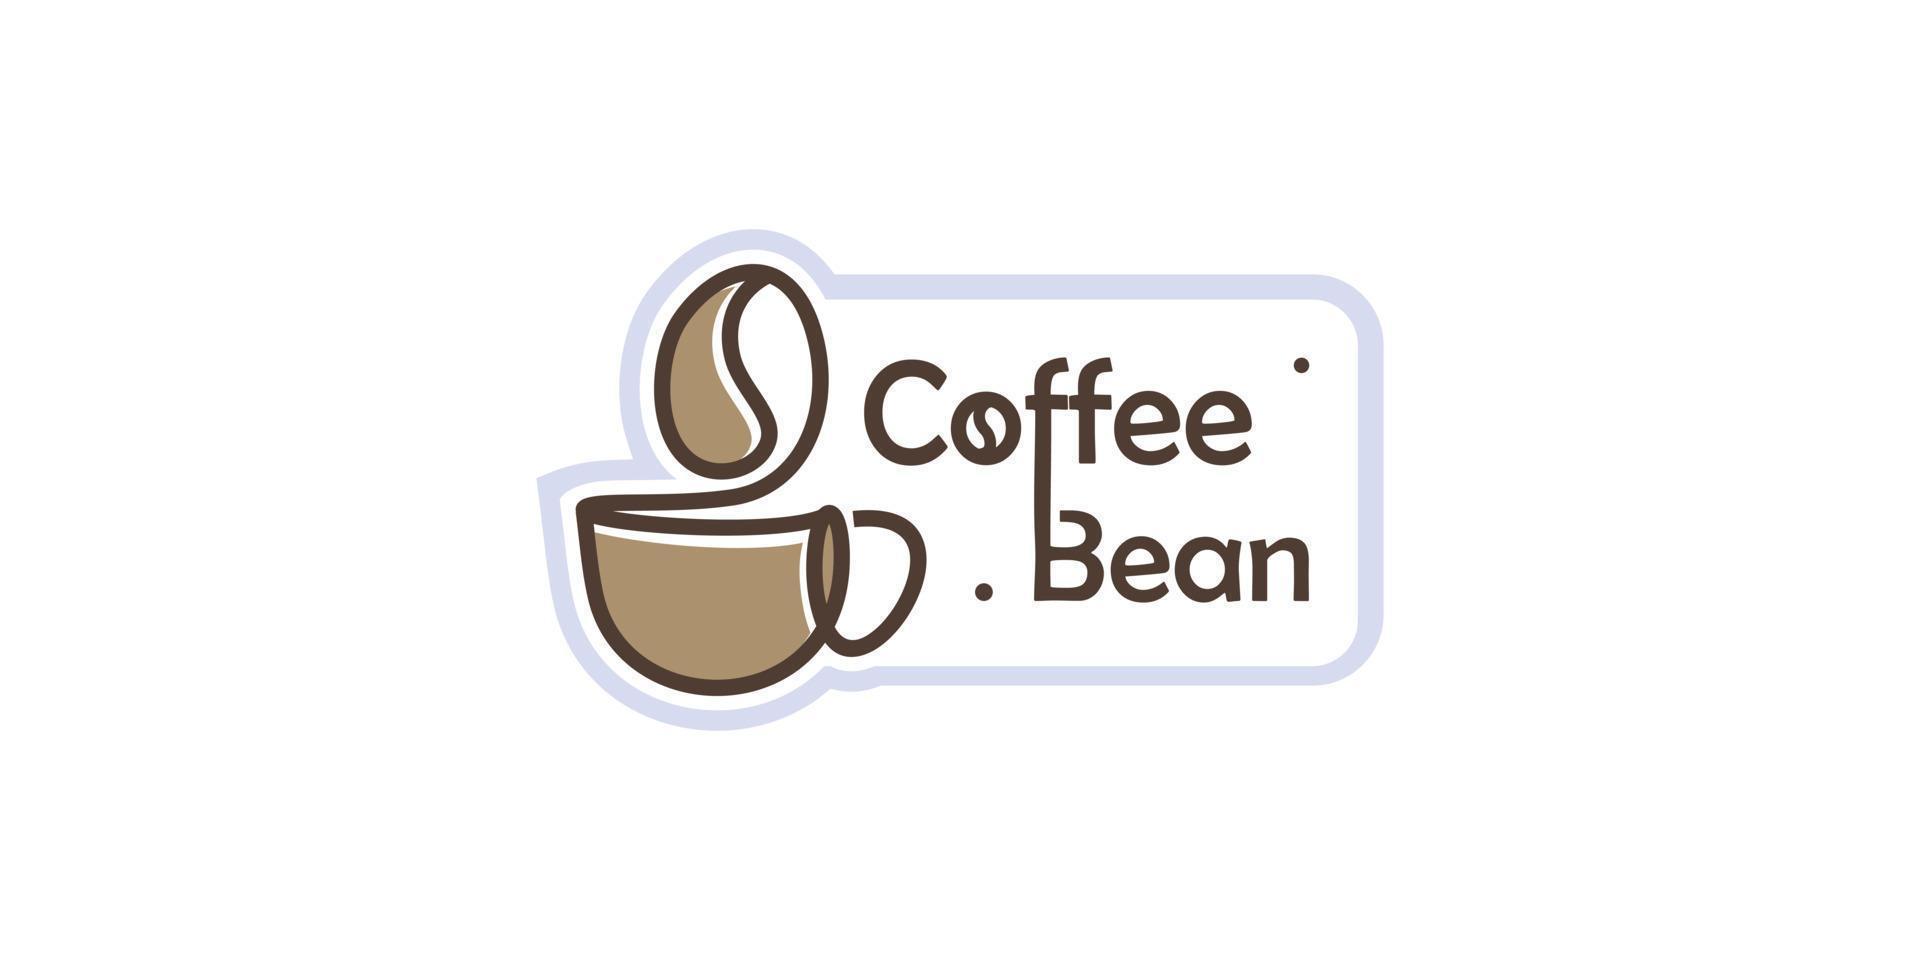 Coffee Bean logo design vector